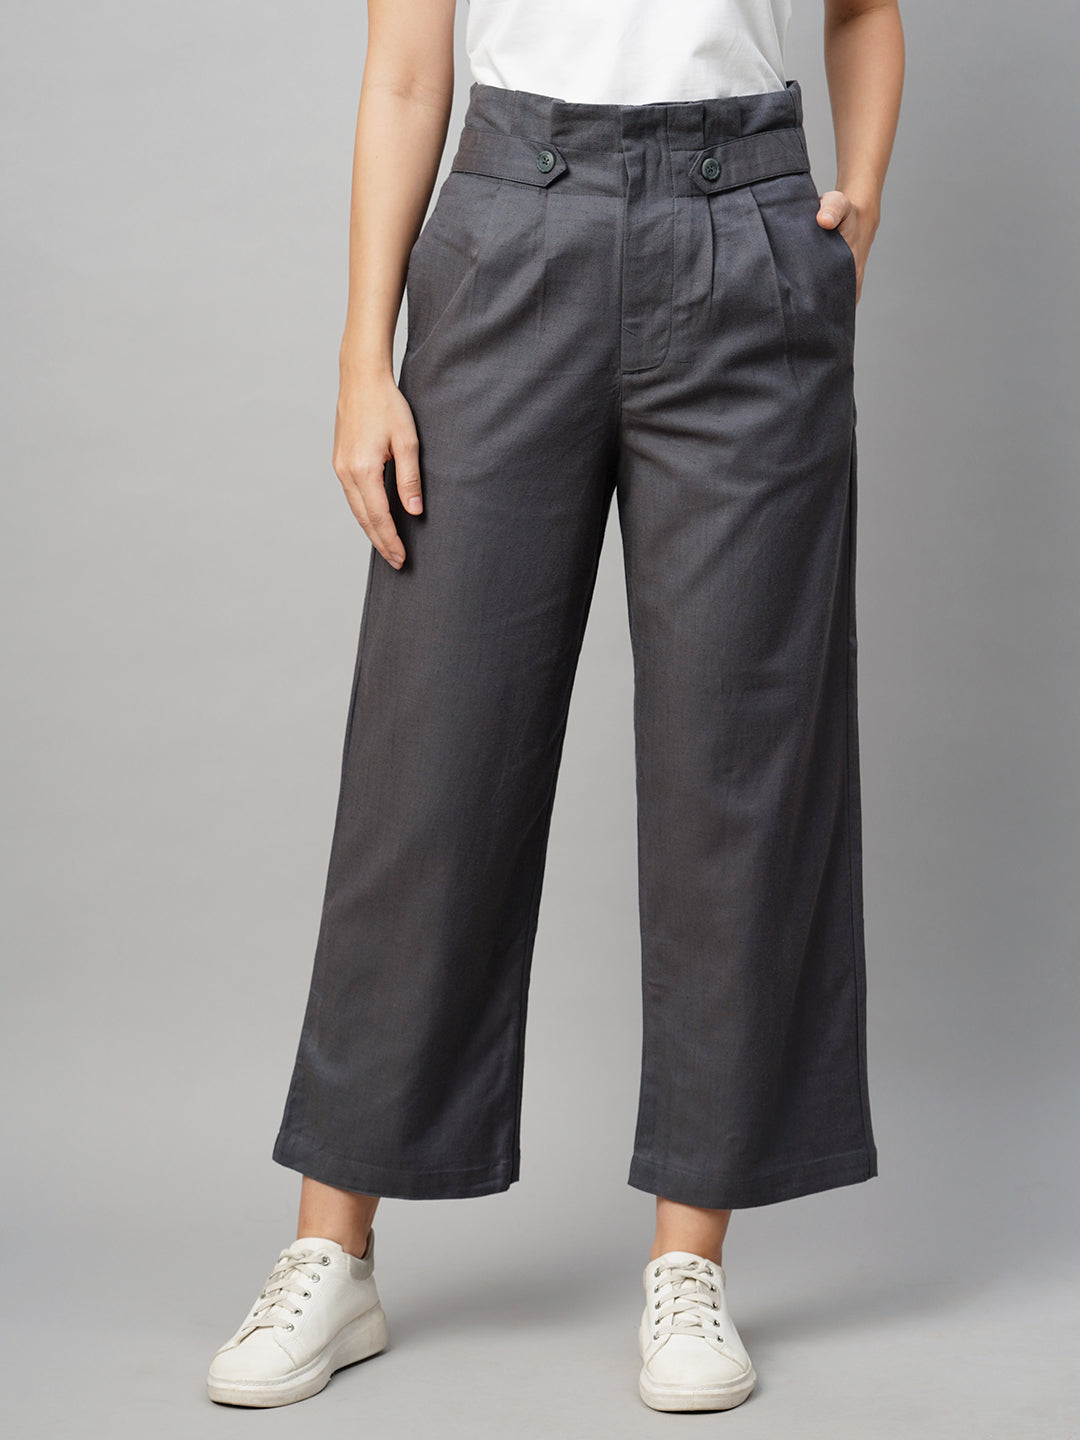 Women Grey Stripe Linen Pencil Pants